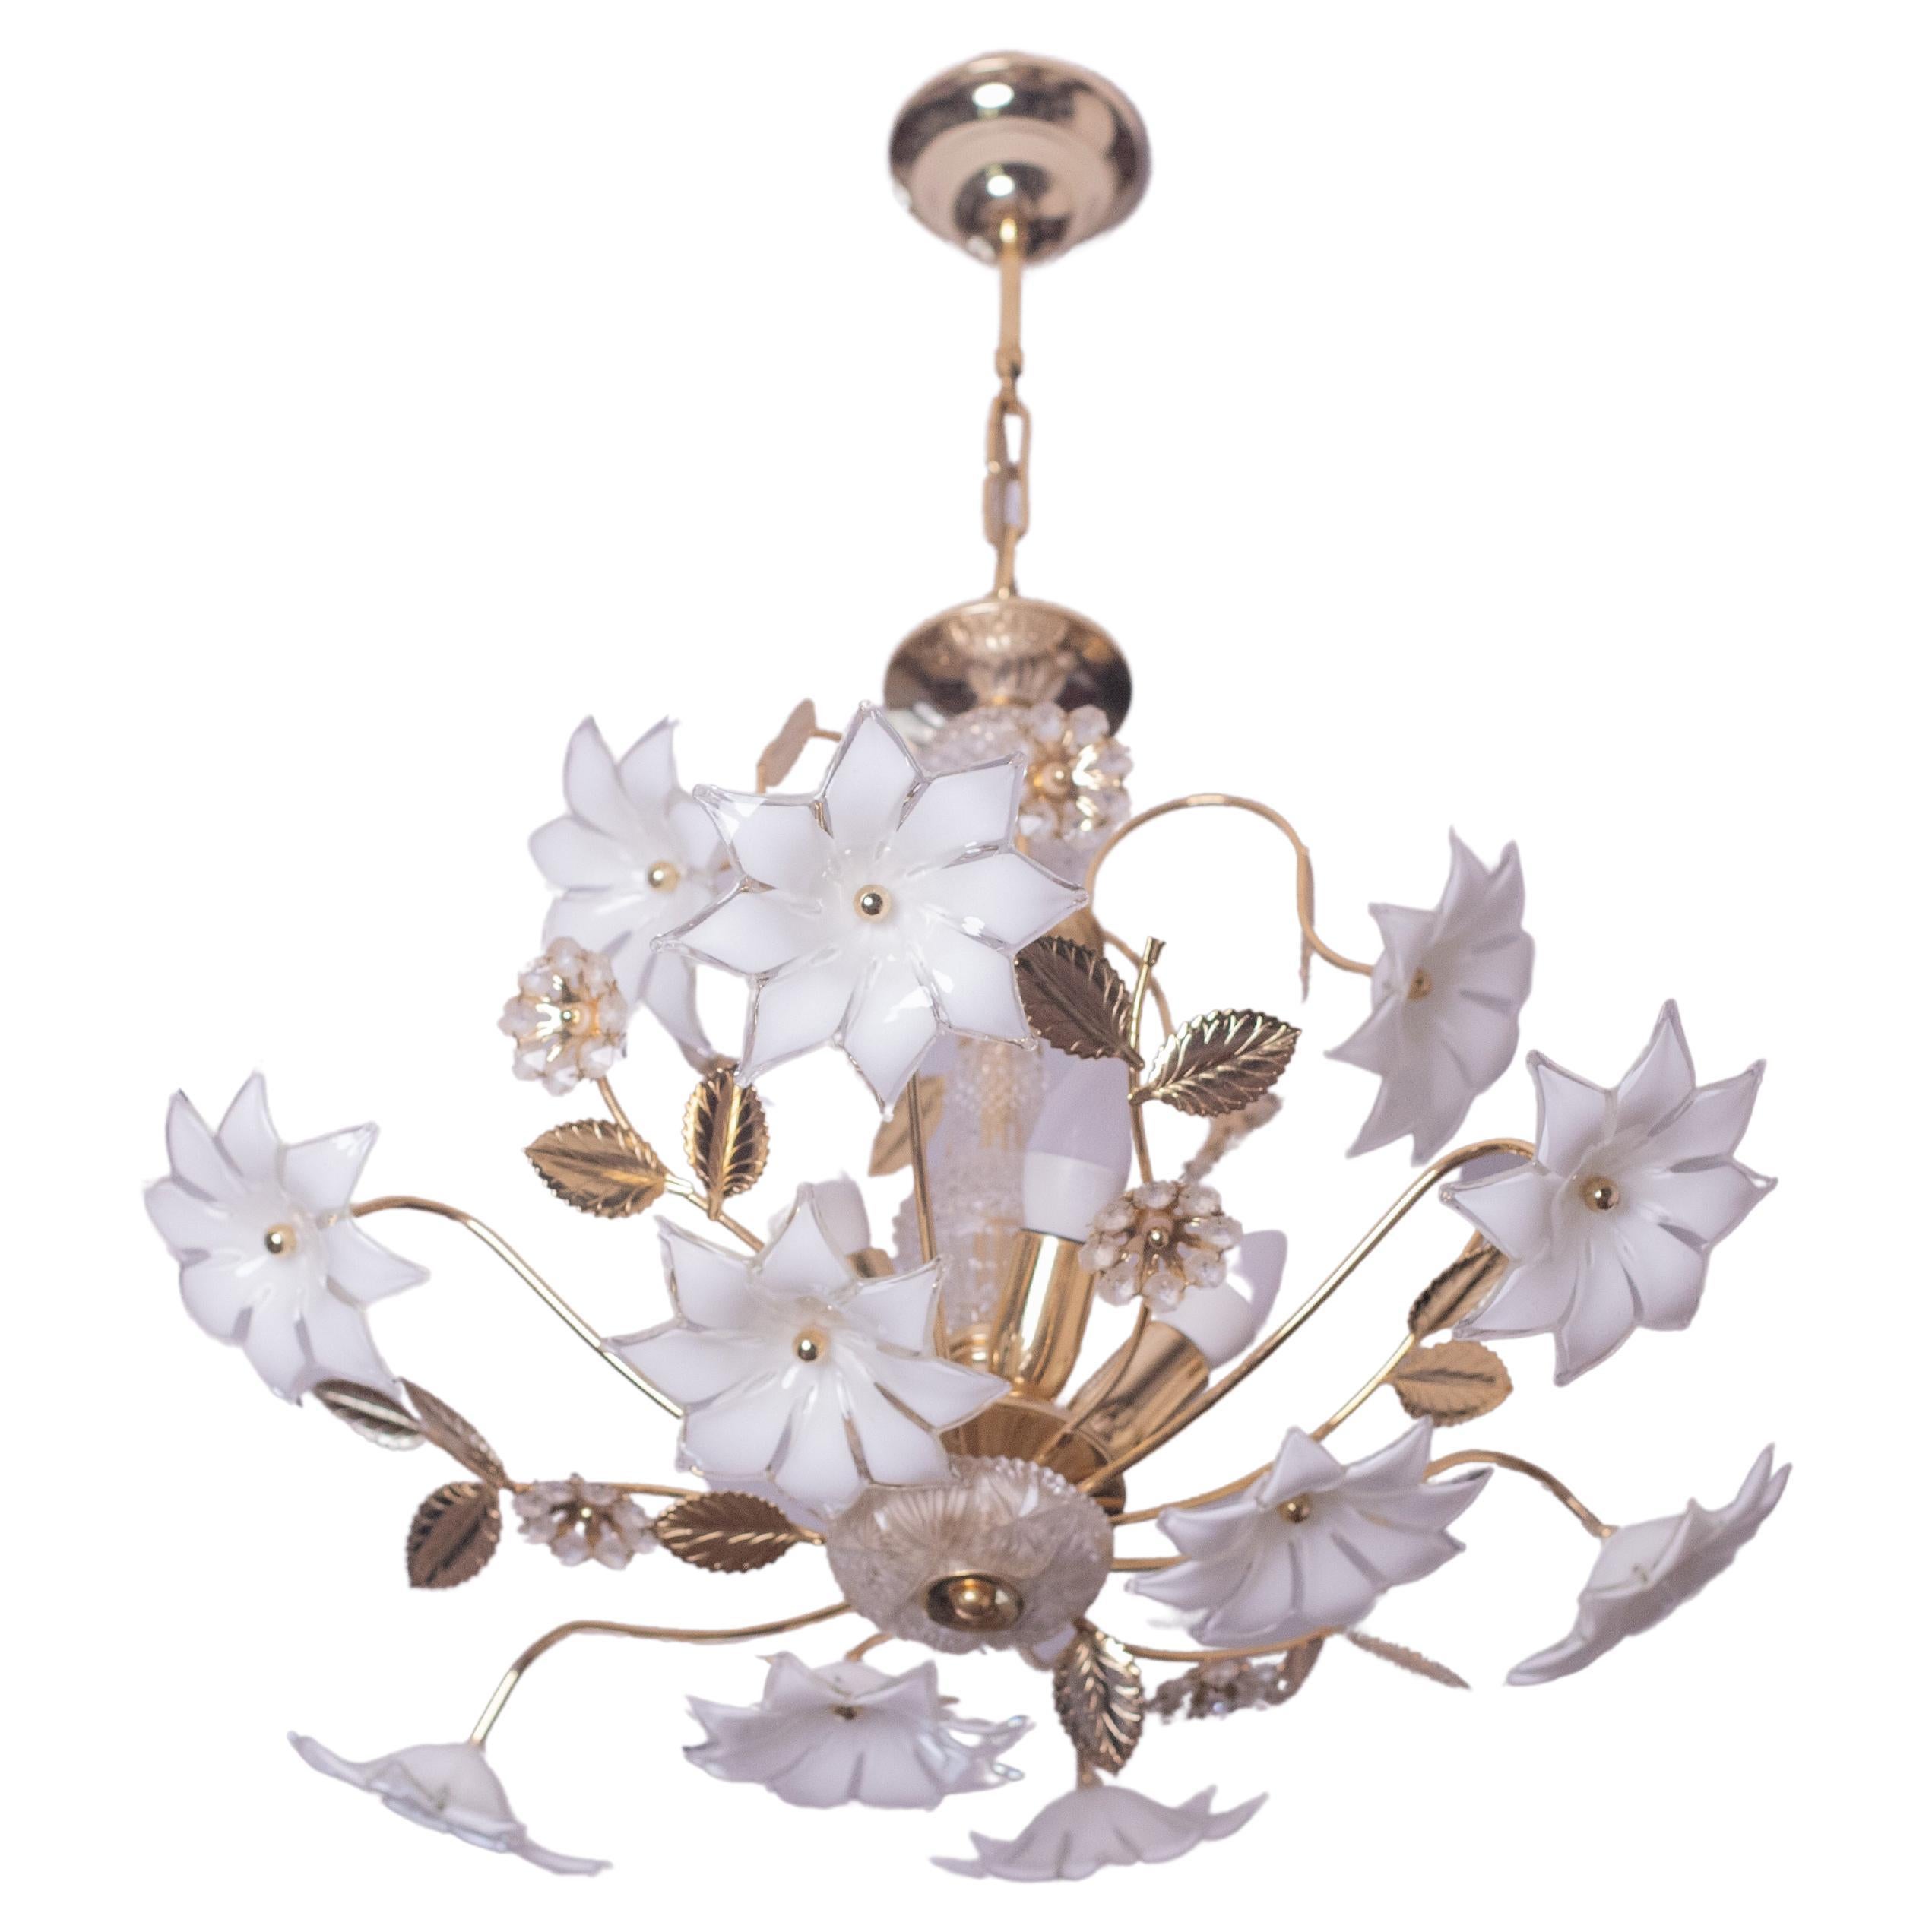 Lustre vintage en verre de Murano rempli de fleurs en verre blanc et en cristal, avec la structure centrale recouverte de cristal.
Le lustre comporte 5 points lumineux avec une douille E14.
La structure est en bain d'or, en excellent état